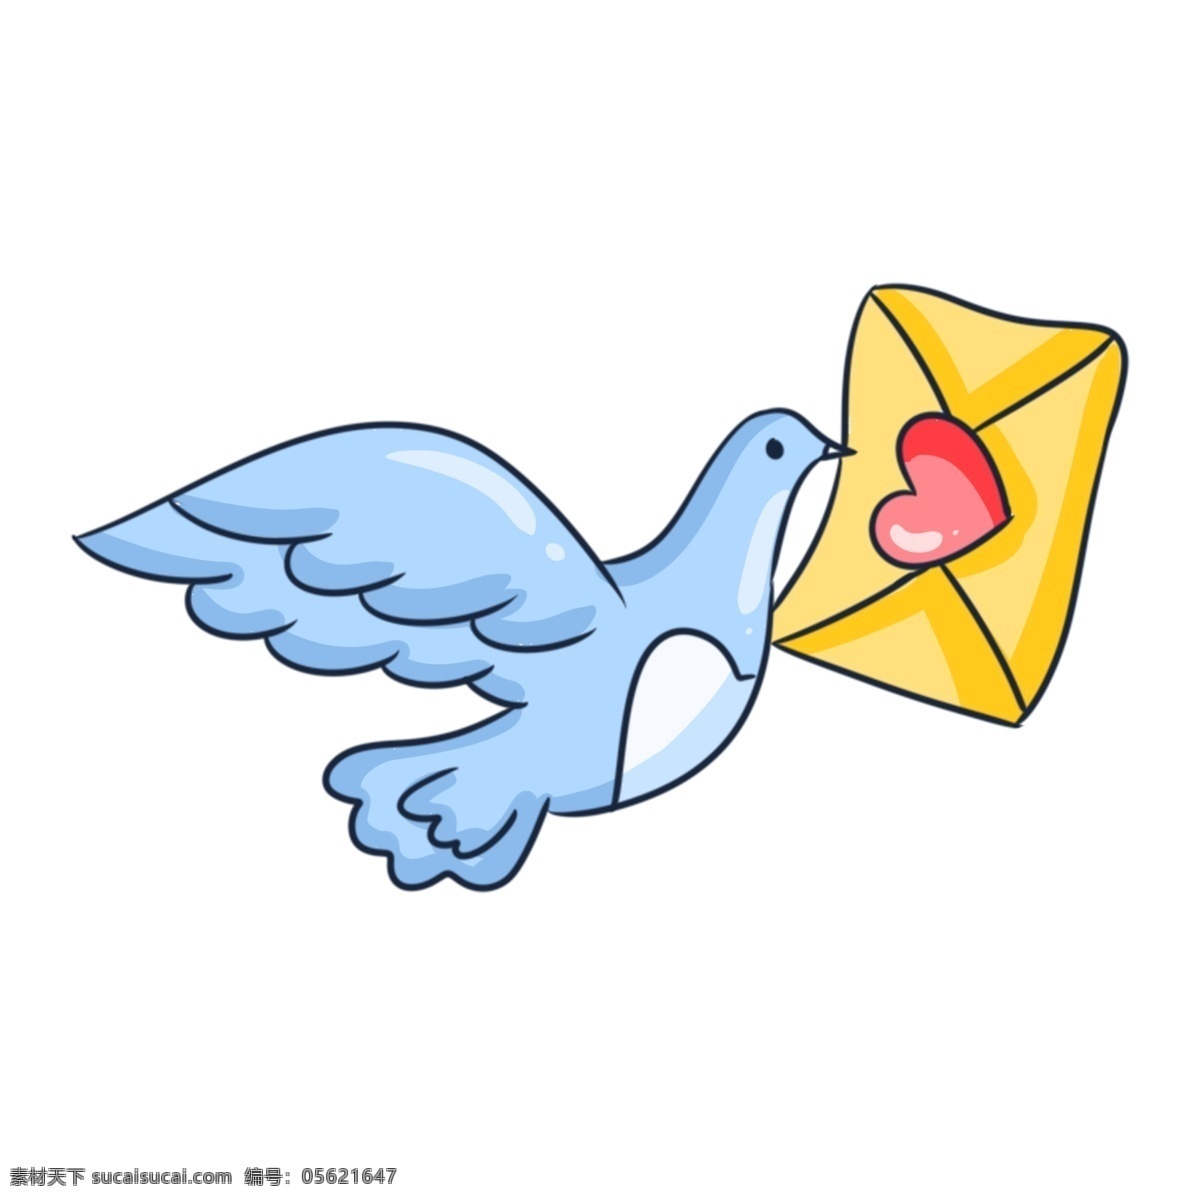 情人节 信鸽 信封 情人节信鸽 黄色的信封 手绘信鸽 红色的桃心 蓝色的信鸽 飞行的信鸽 漂亮的信鸽